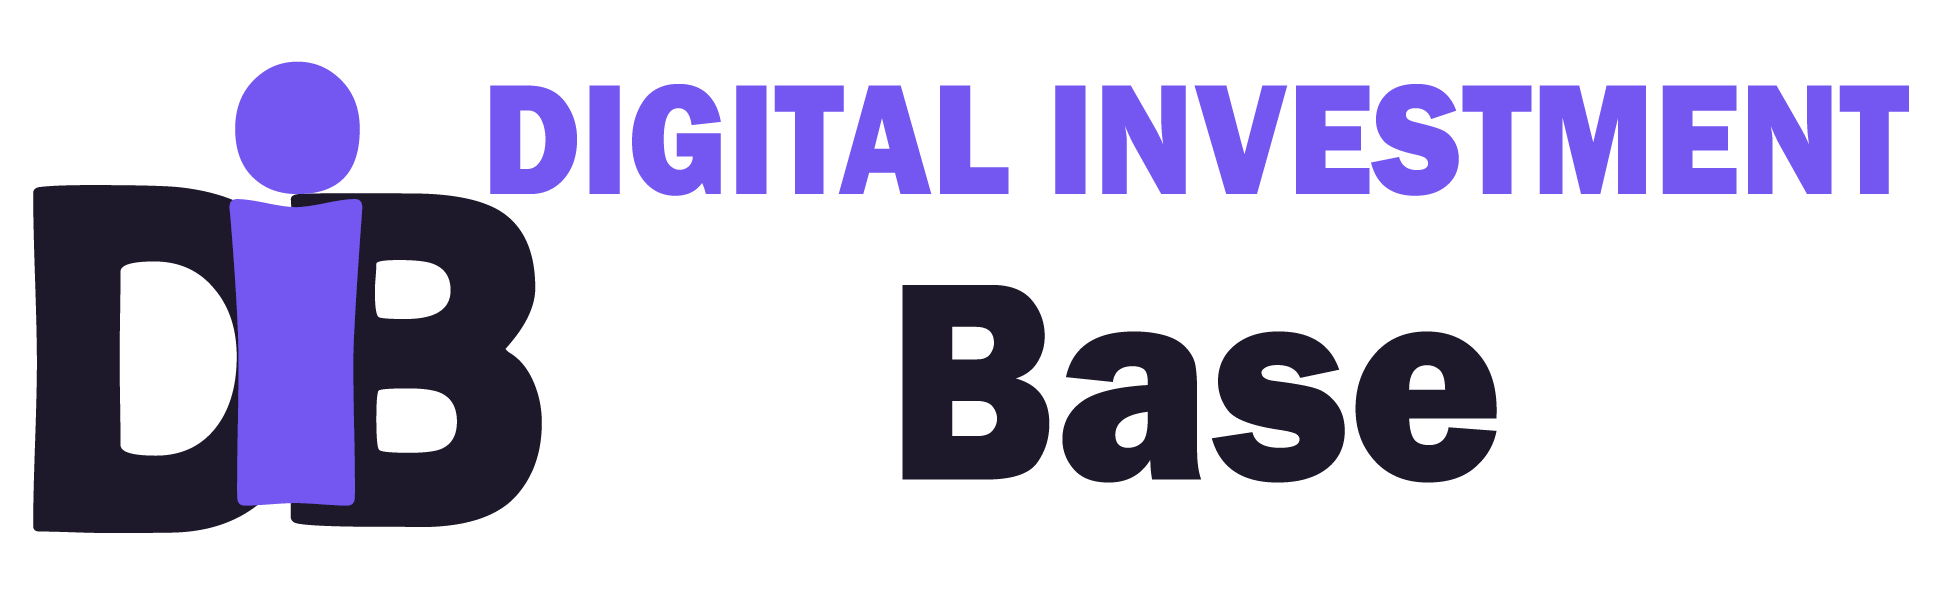 Digital Invest Base